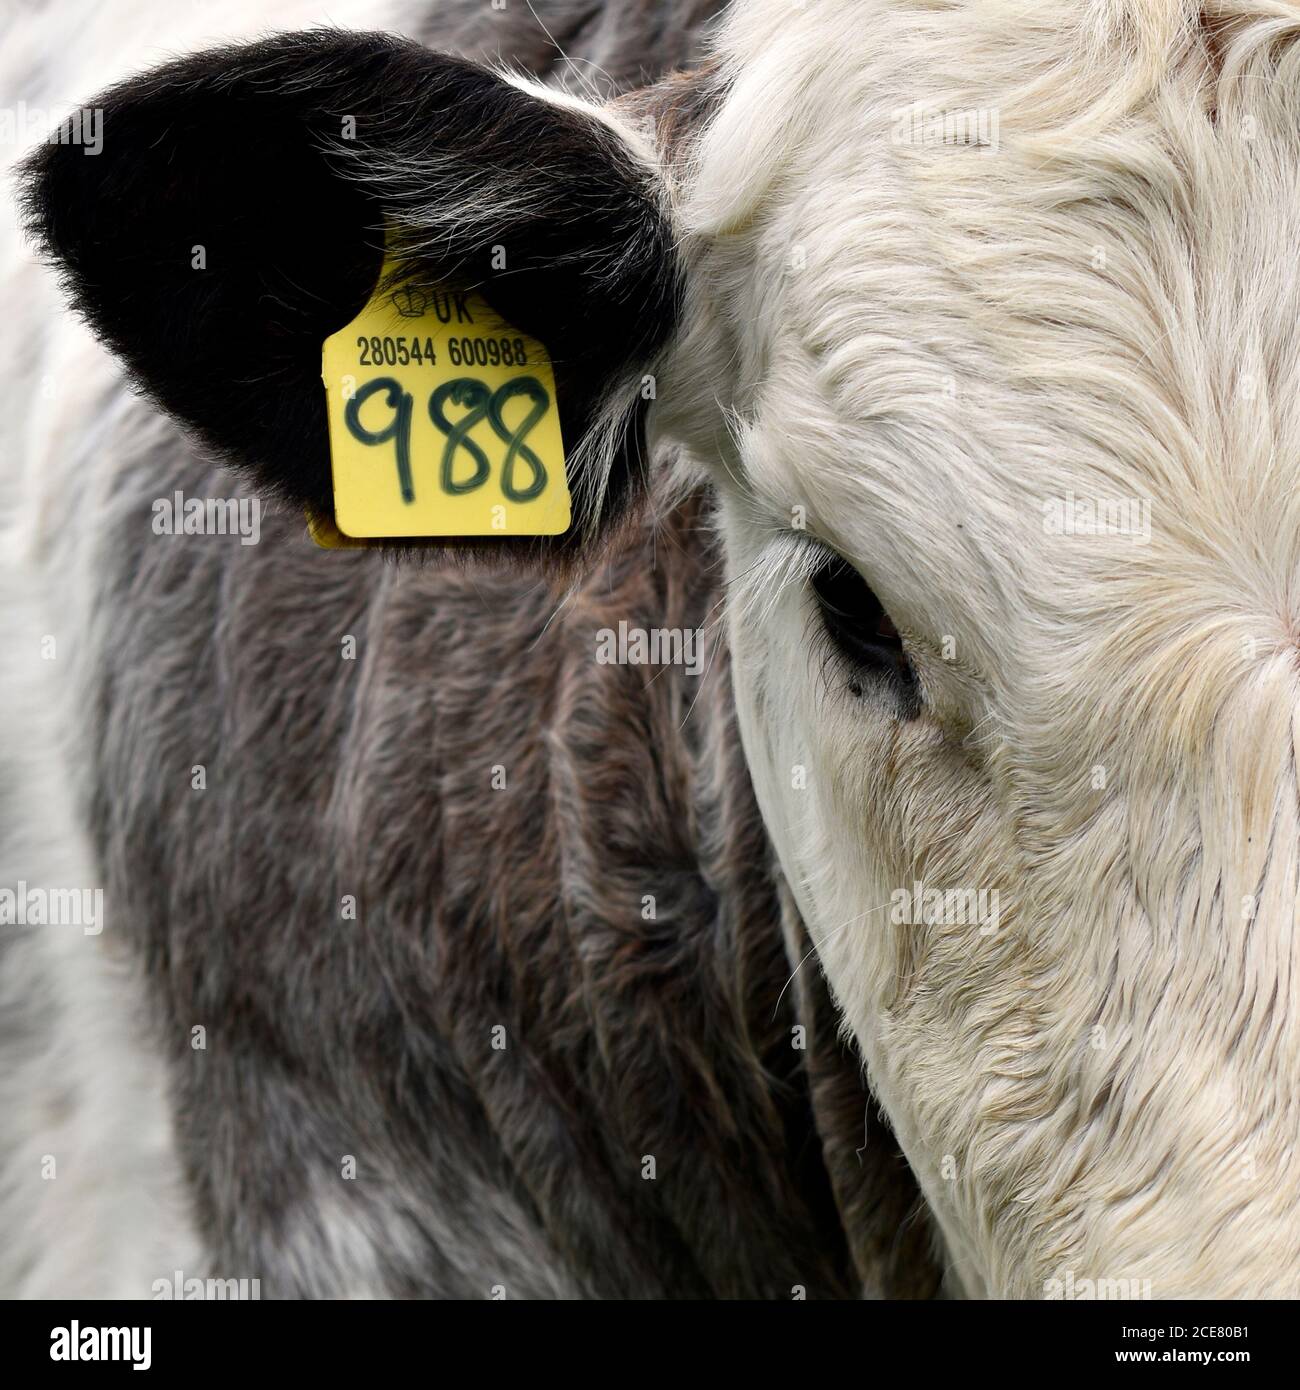 Britische Rinderkalb Nahaufnahme von Kopf, Auge, Ohr und Seite mit gelbem Farmvieh-ID-Etikett mit Zahlen. Stockfoto